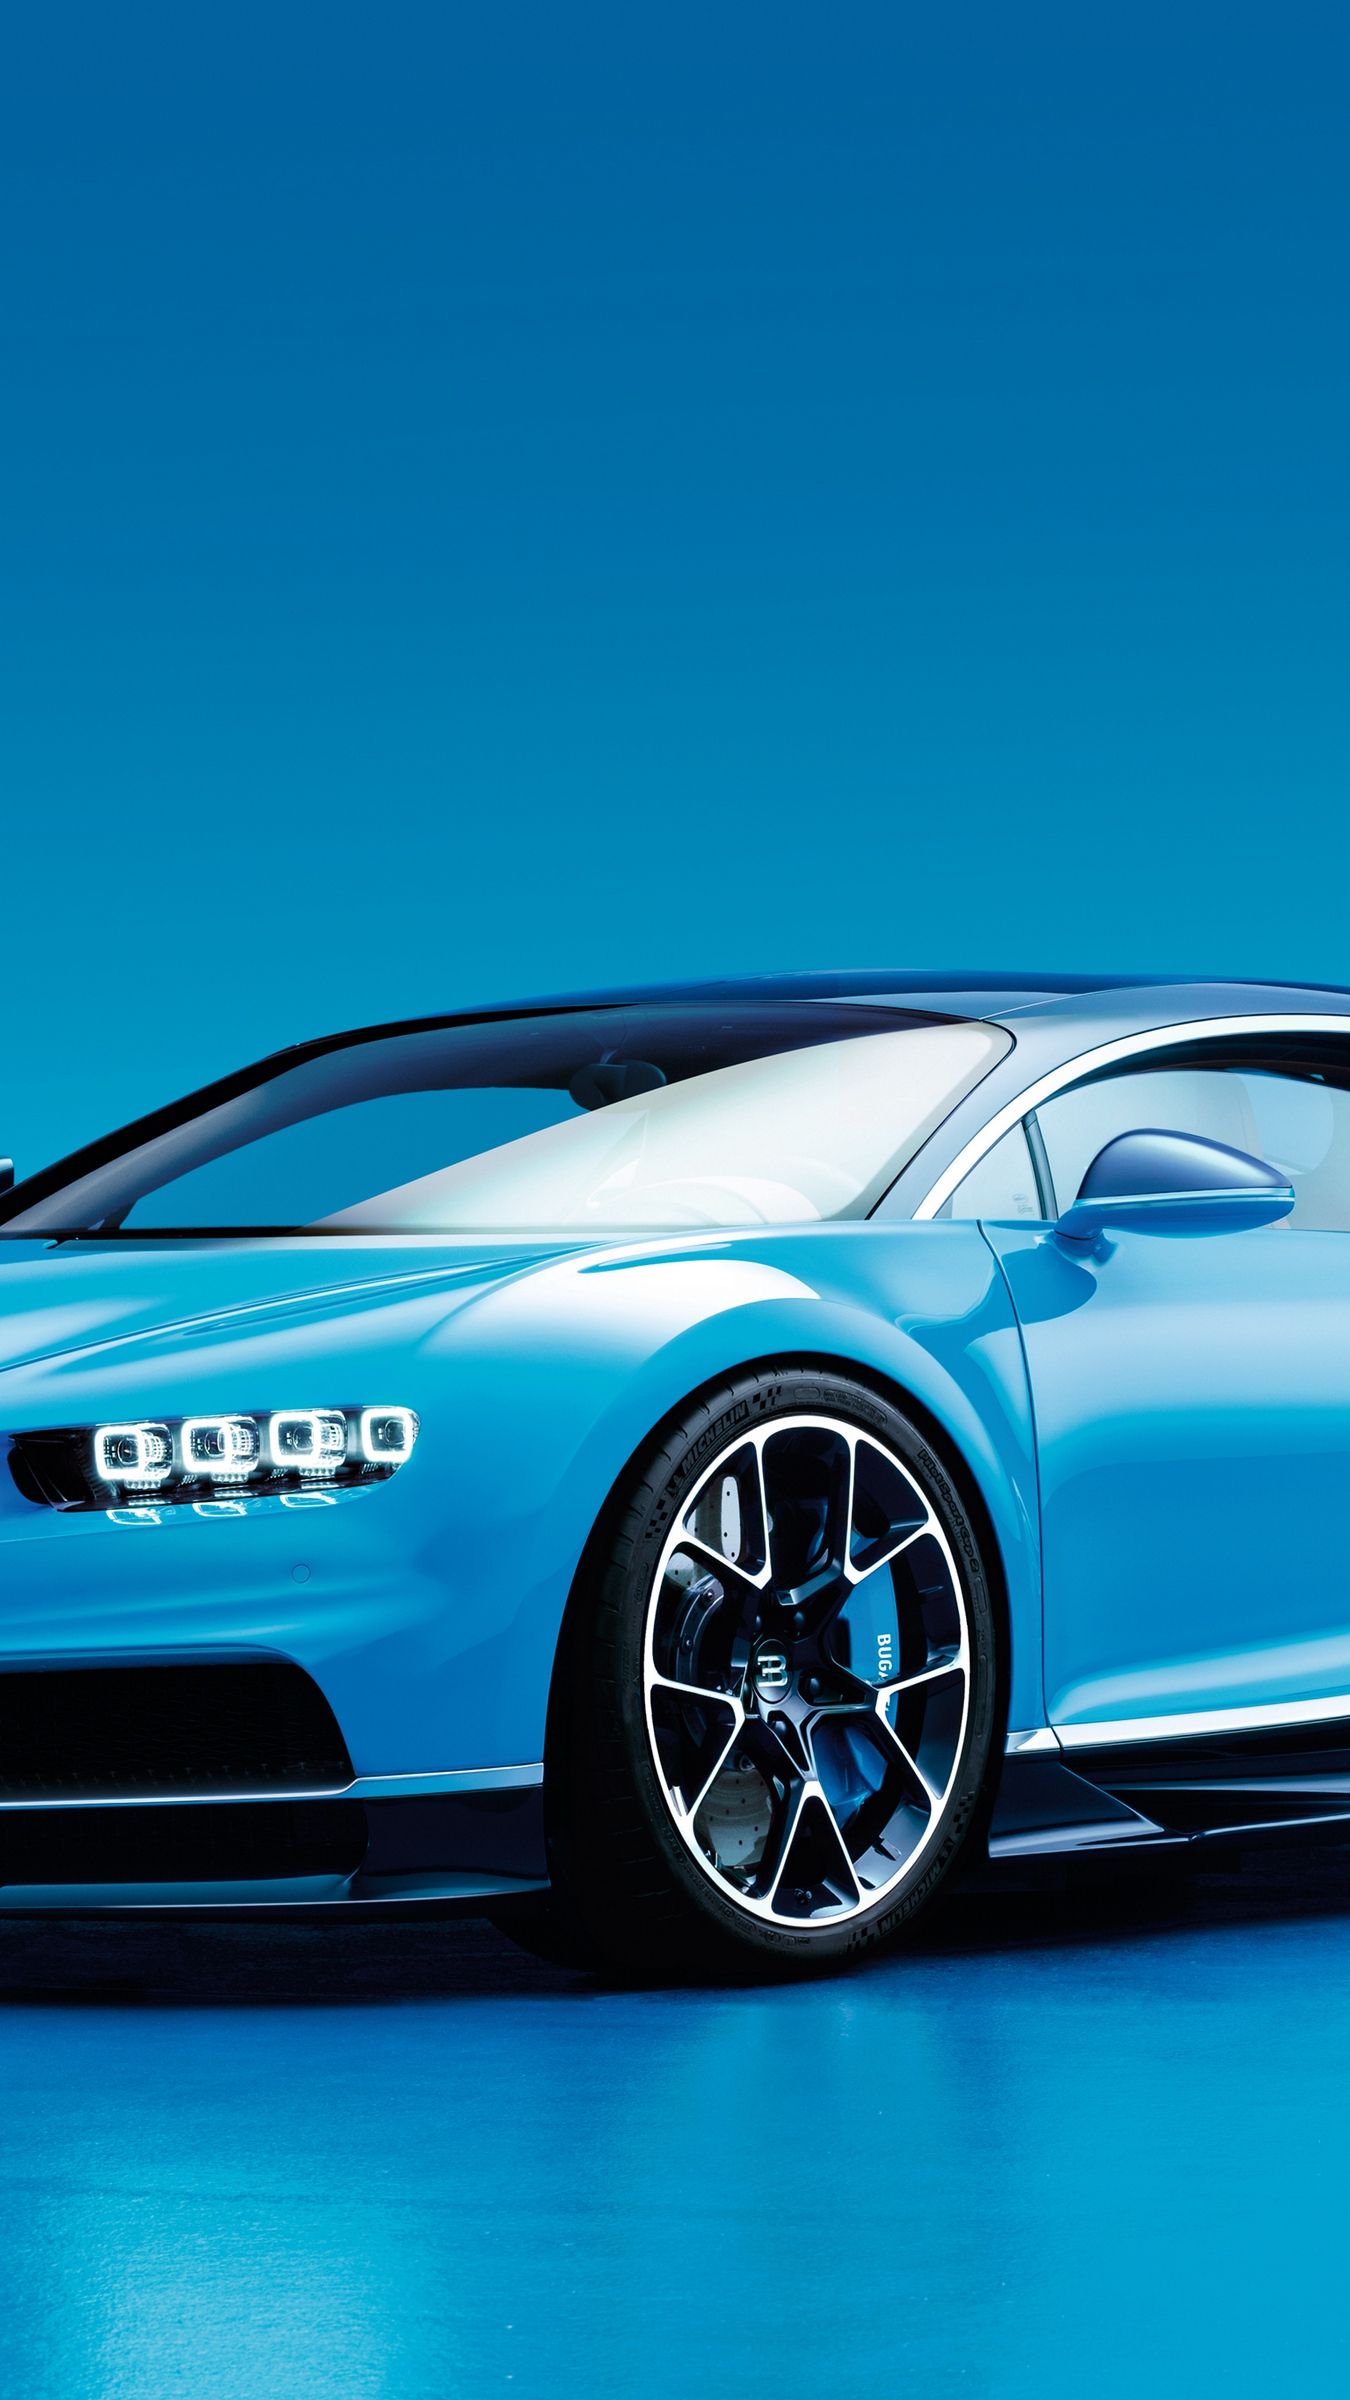 بهترین Background رایگان ماشین بوگاتی برای علاقمندان رنگ آبی